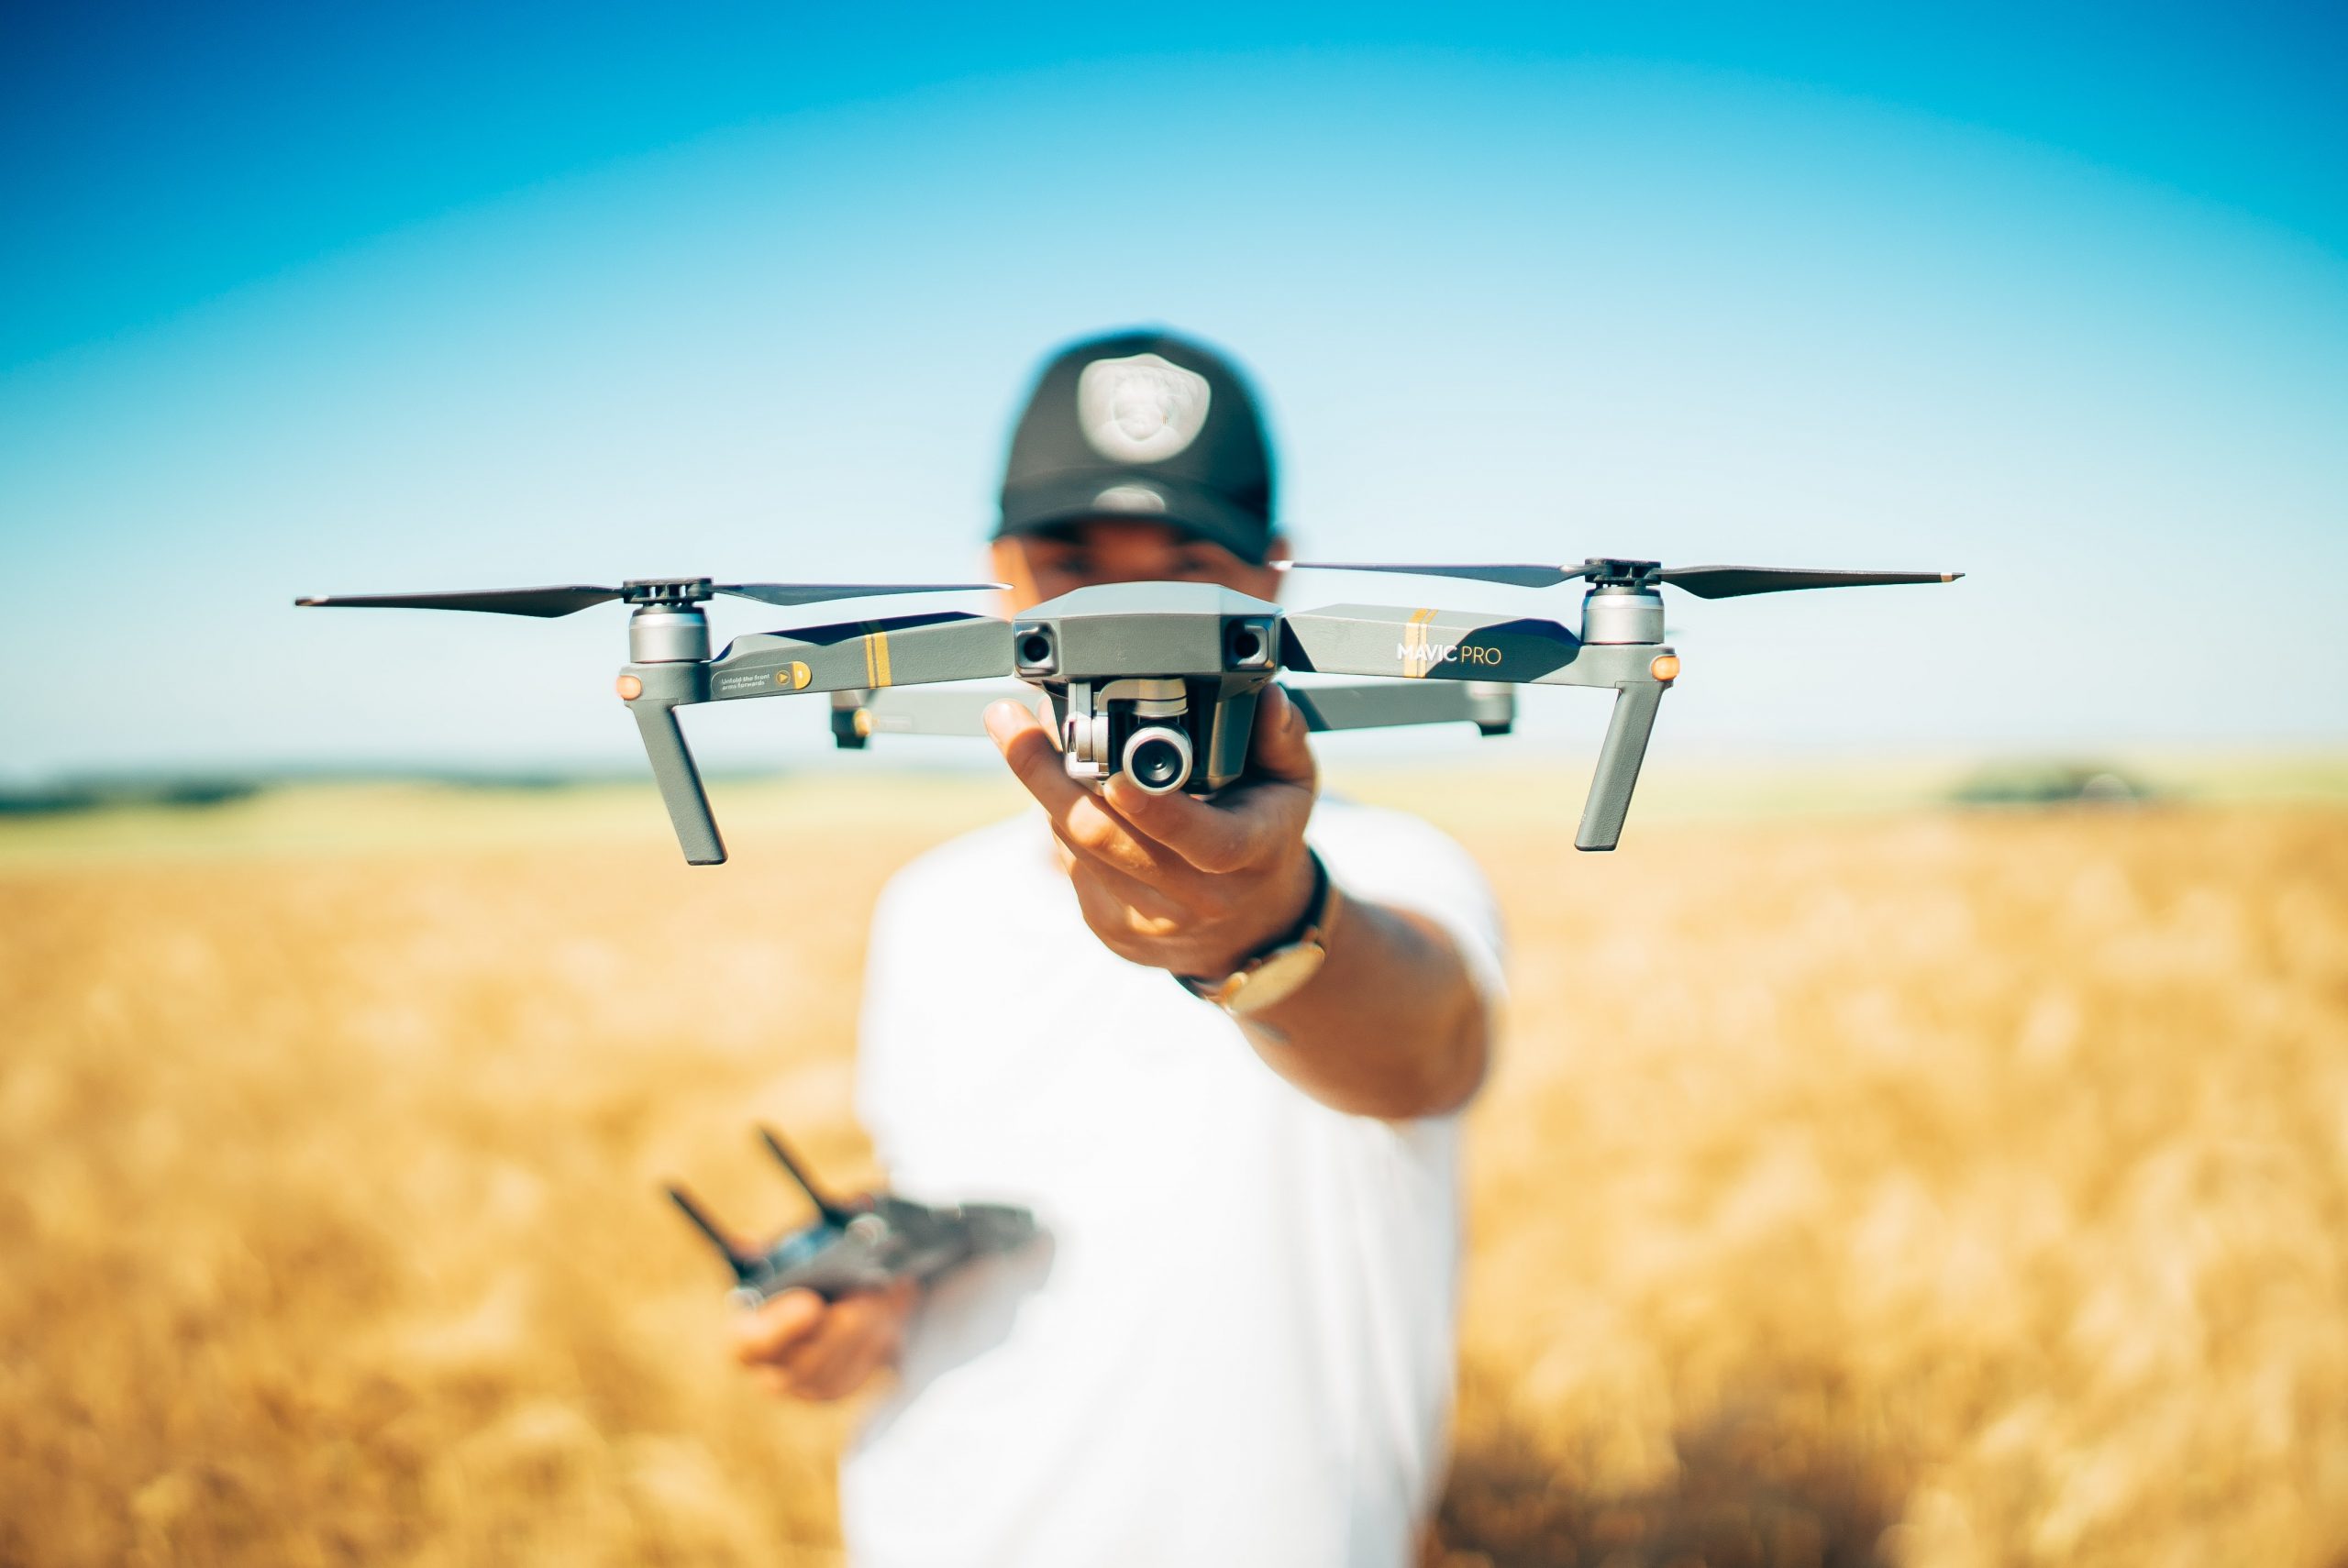 Melhor drone para iniciantes: 5 dicas para escolher o seu